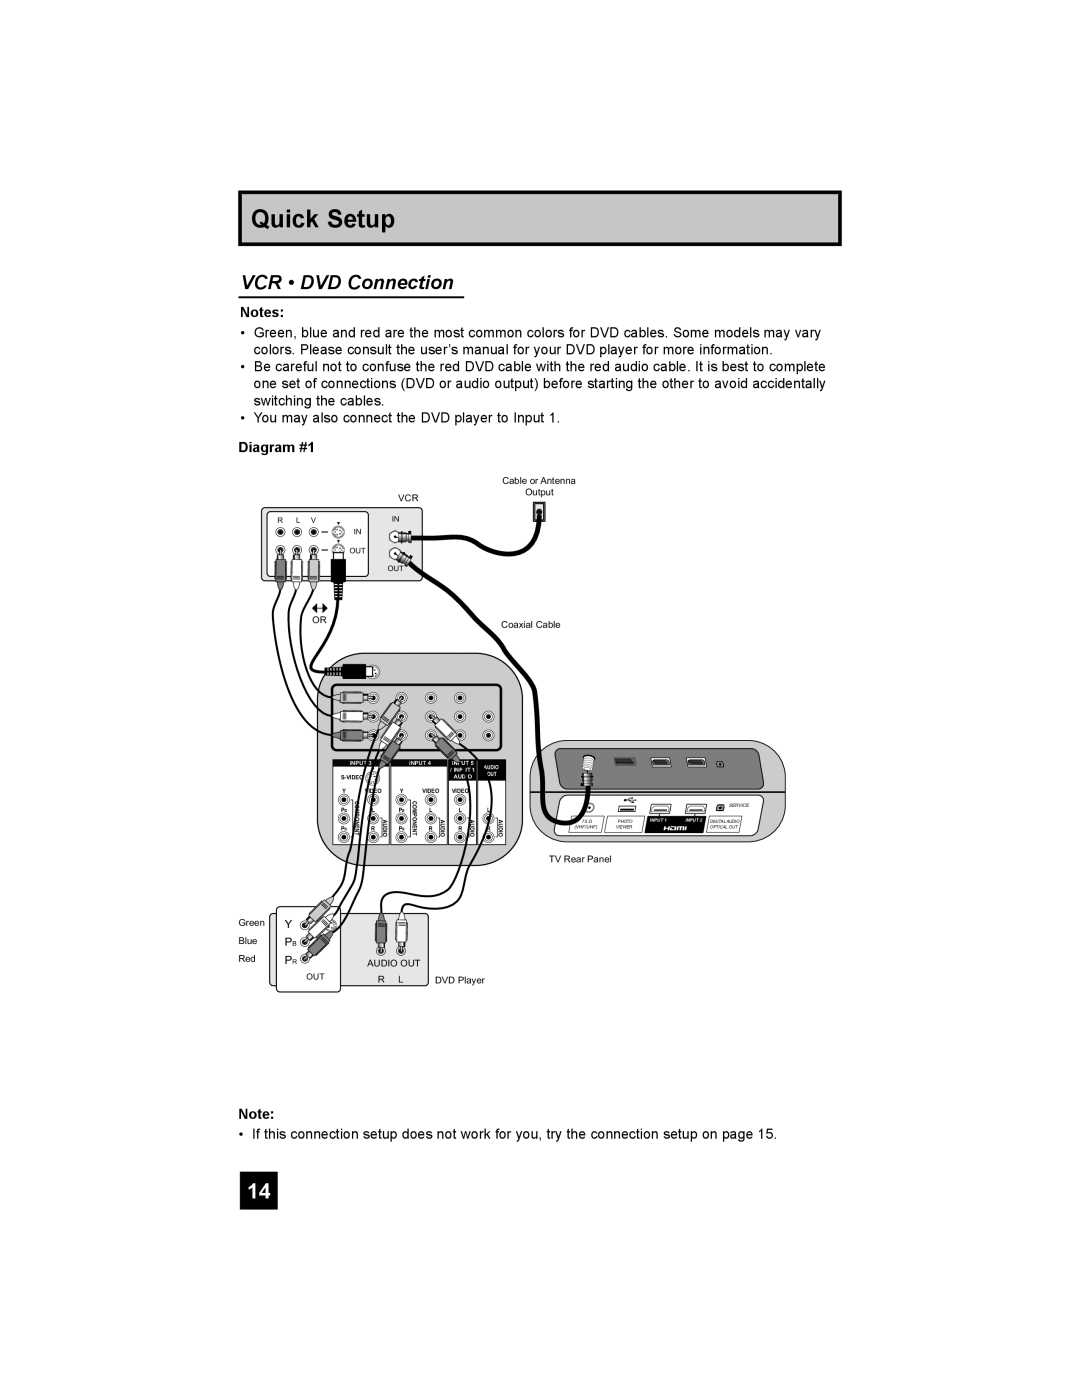 JVC LT-42X688, LT-37X688 manual VCR DVD Connection, Quick Setup, Diagram #1 